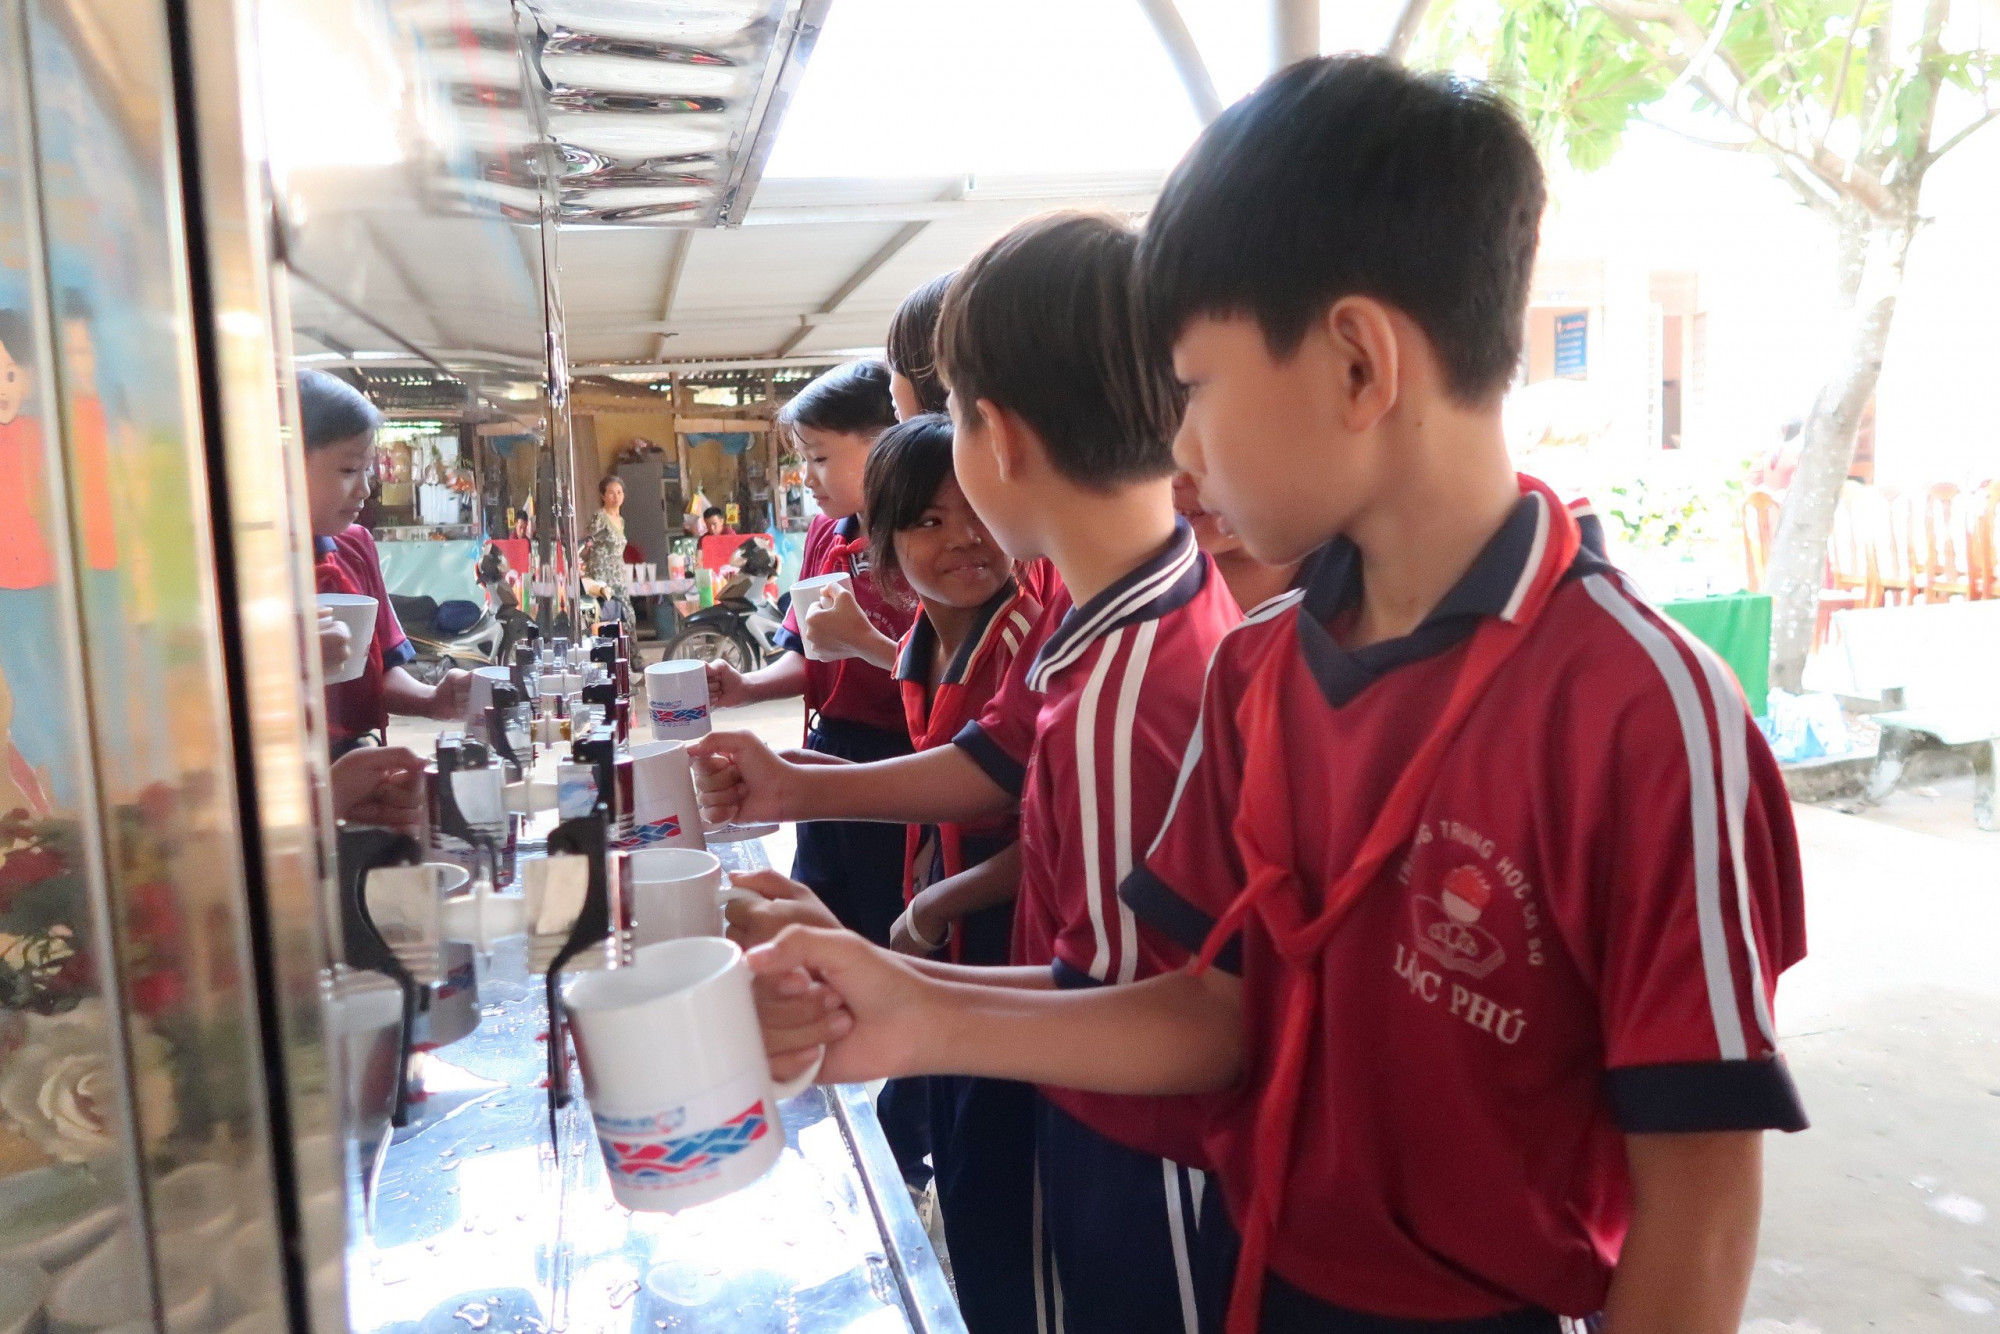 Các em học sinh trường Tiểu học và THCS Lộc Phú thích thú với những giọt nước mát lành từ hệ thống máy lọc nước vừa được trang bị cho trường học